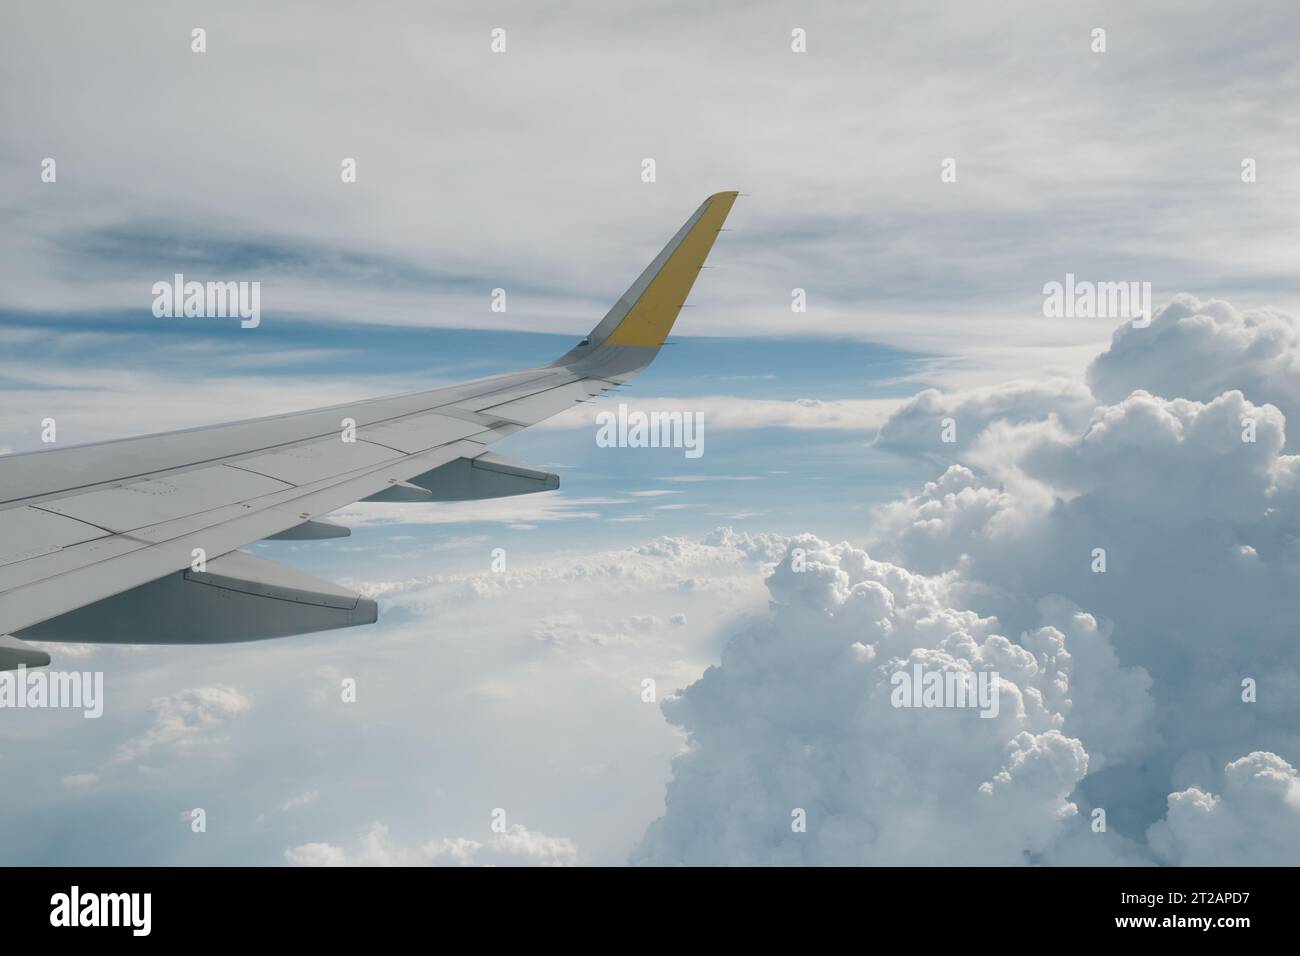 Ansicht des rechten Flügels vom Fenster des Flugzeugs, das in der Luft hochfliegt. Wolken im blauen Himmel. Flugzeug im Flug. Luftfahrt. Hintergrund von Flugreisen. Stockfoto